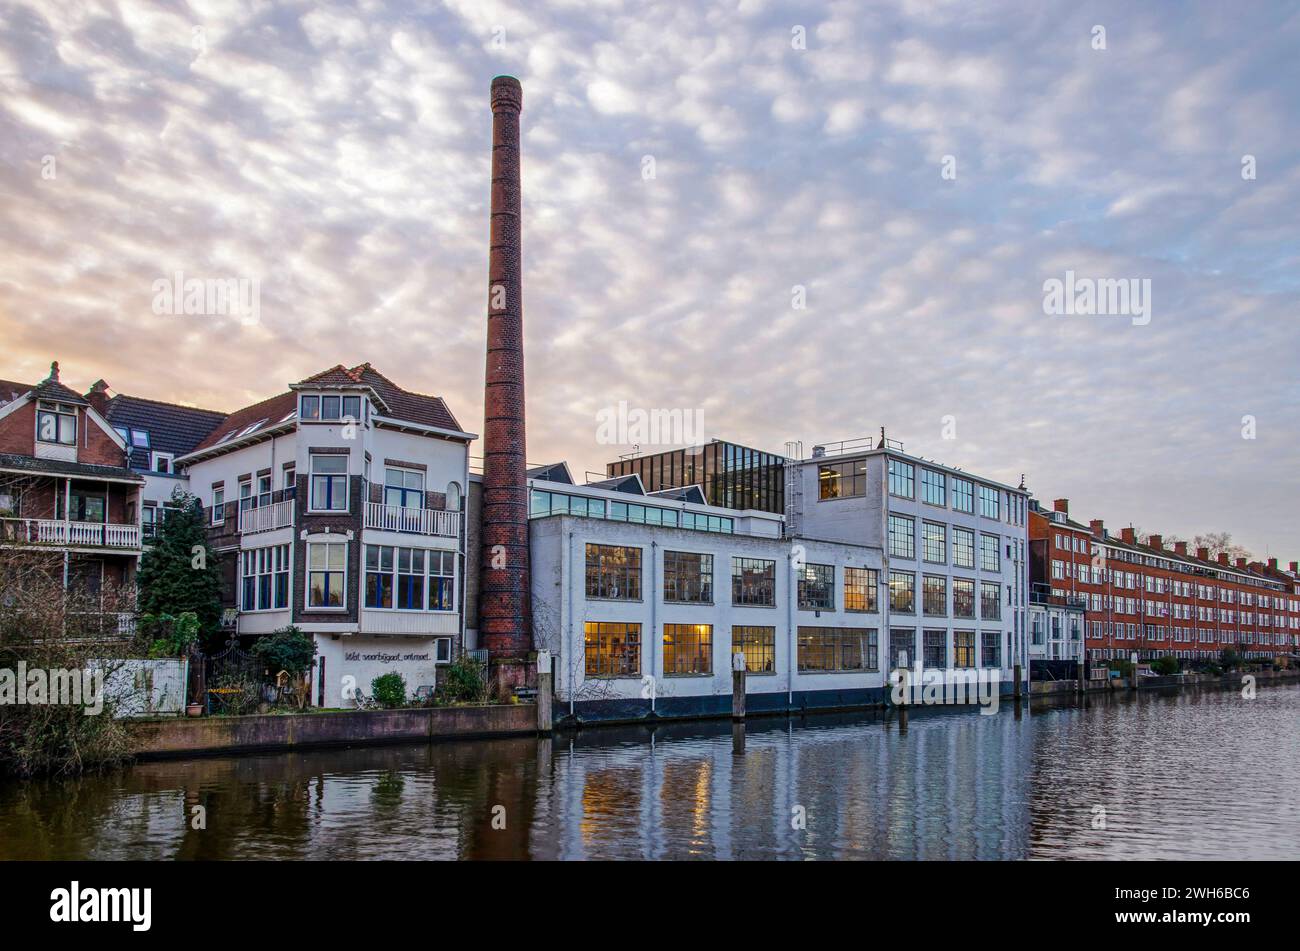 Ehemalige Fabrik am Ufer des Schie-Kanals im Stadtteil Delfshaven, heute in ein Bürogebäude umgewandelt Stockfoto